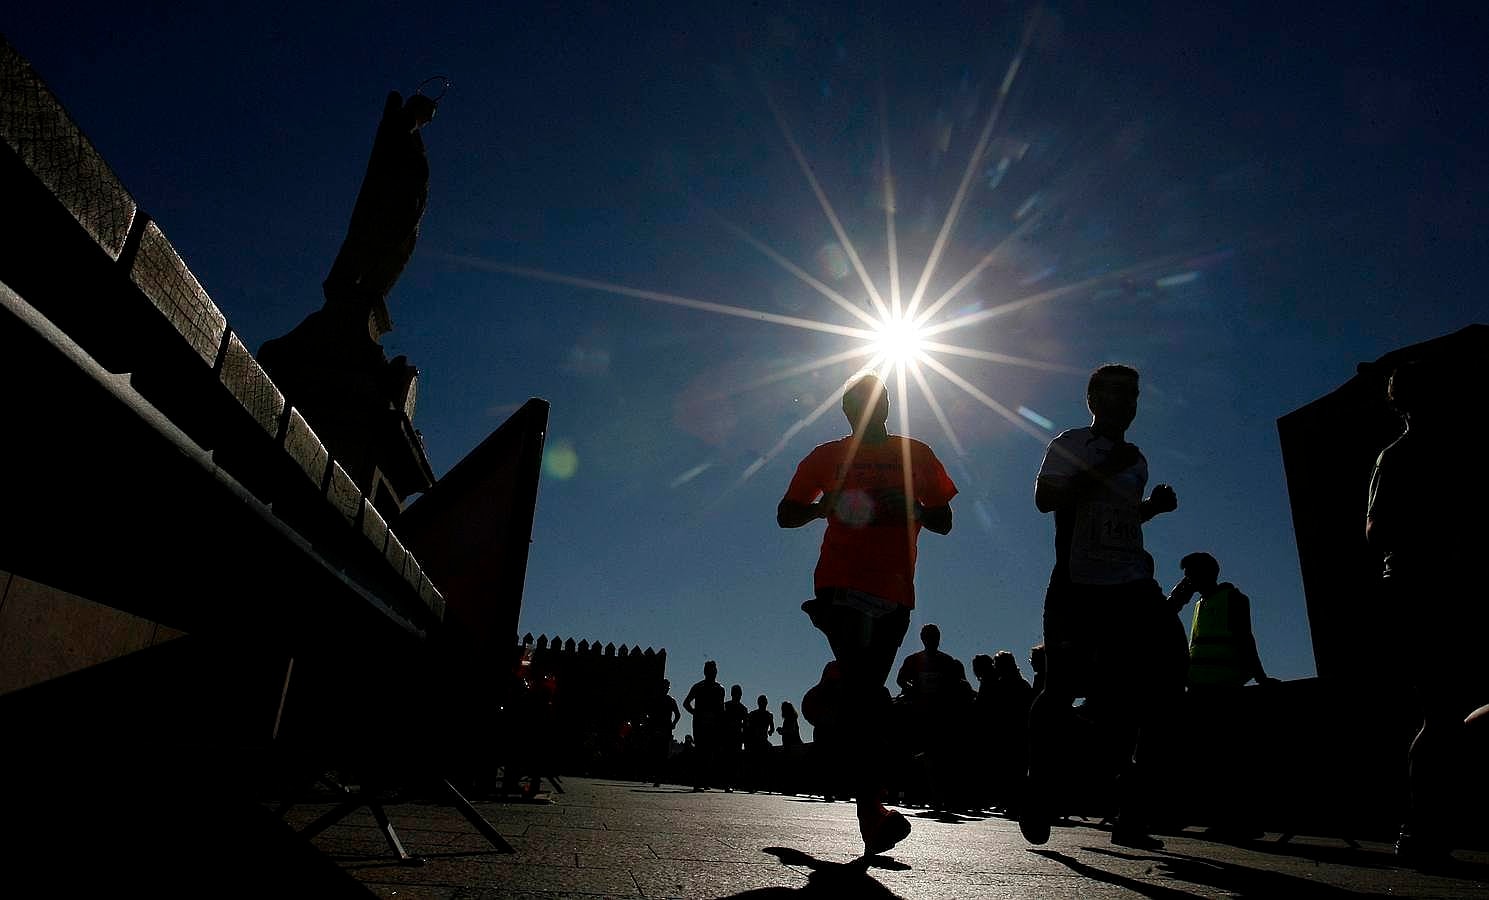 En imágenes, la espectacular XXXI Media Maratón de Córdoba